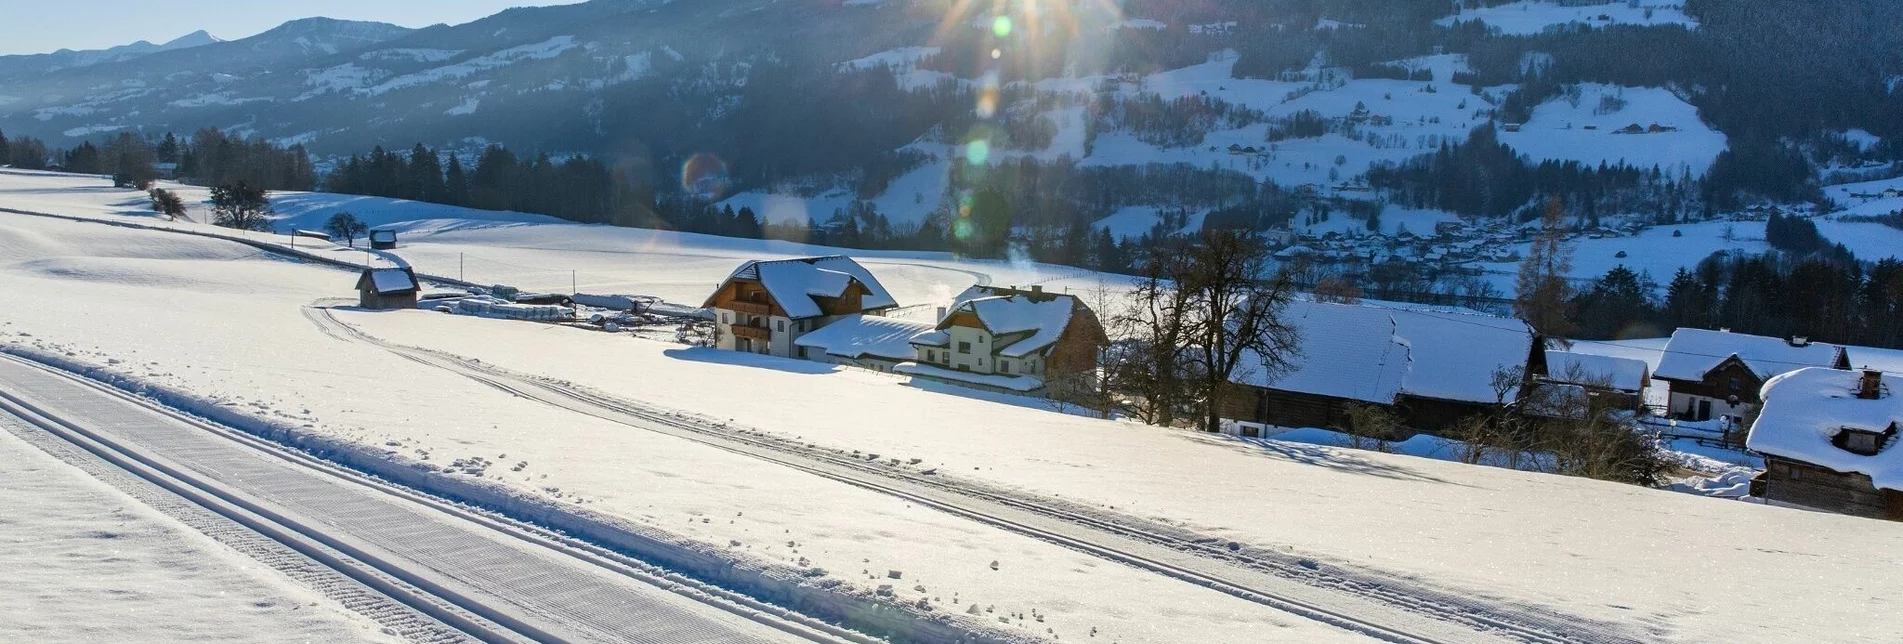 Winterwandern Birnberger Sonnenweg - Touren-Impression #1 | © TVB Haus-Aich-Gössenberg